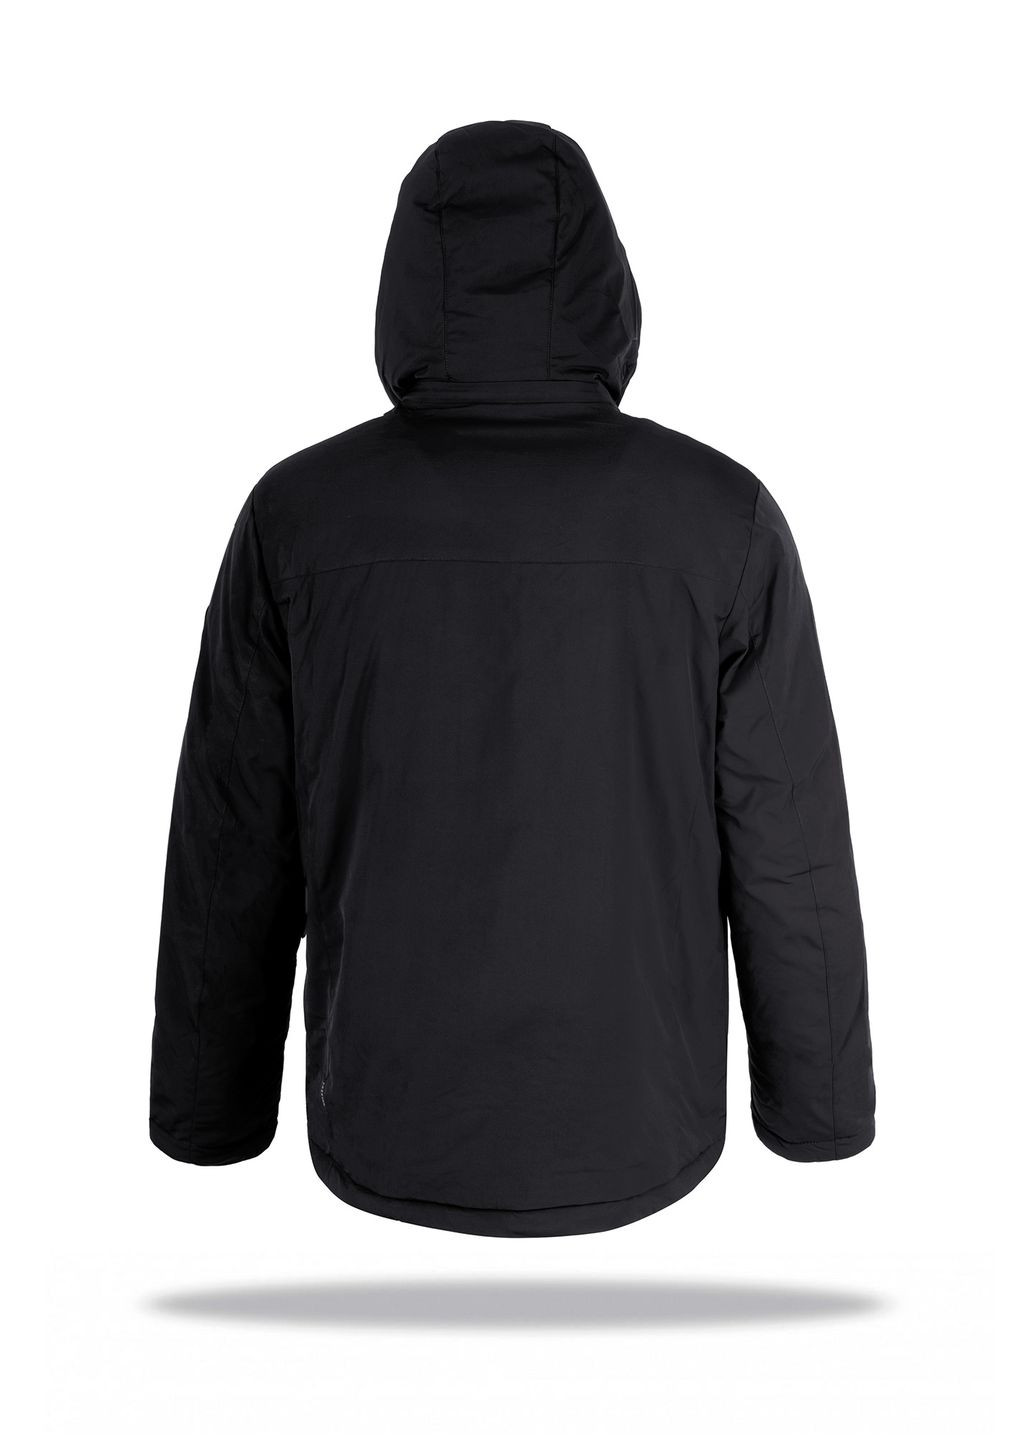 Черная демисезонная куртка мужская wf 70559 черная Freever